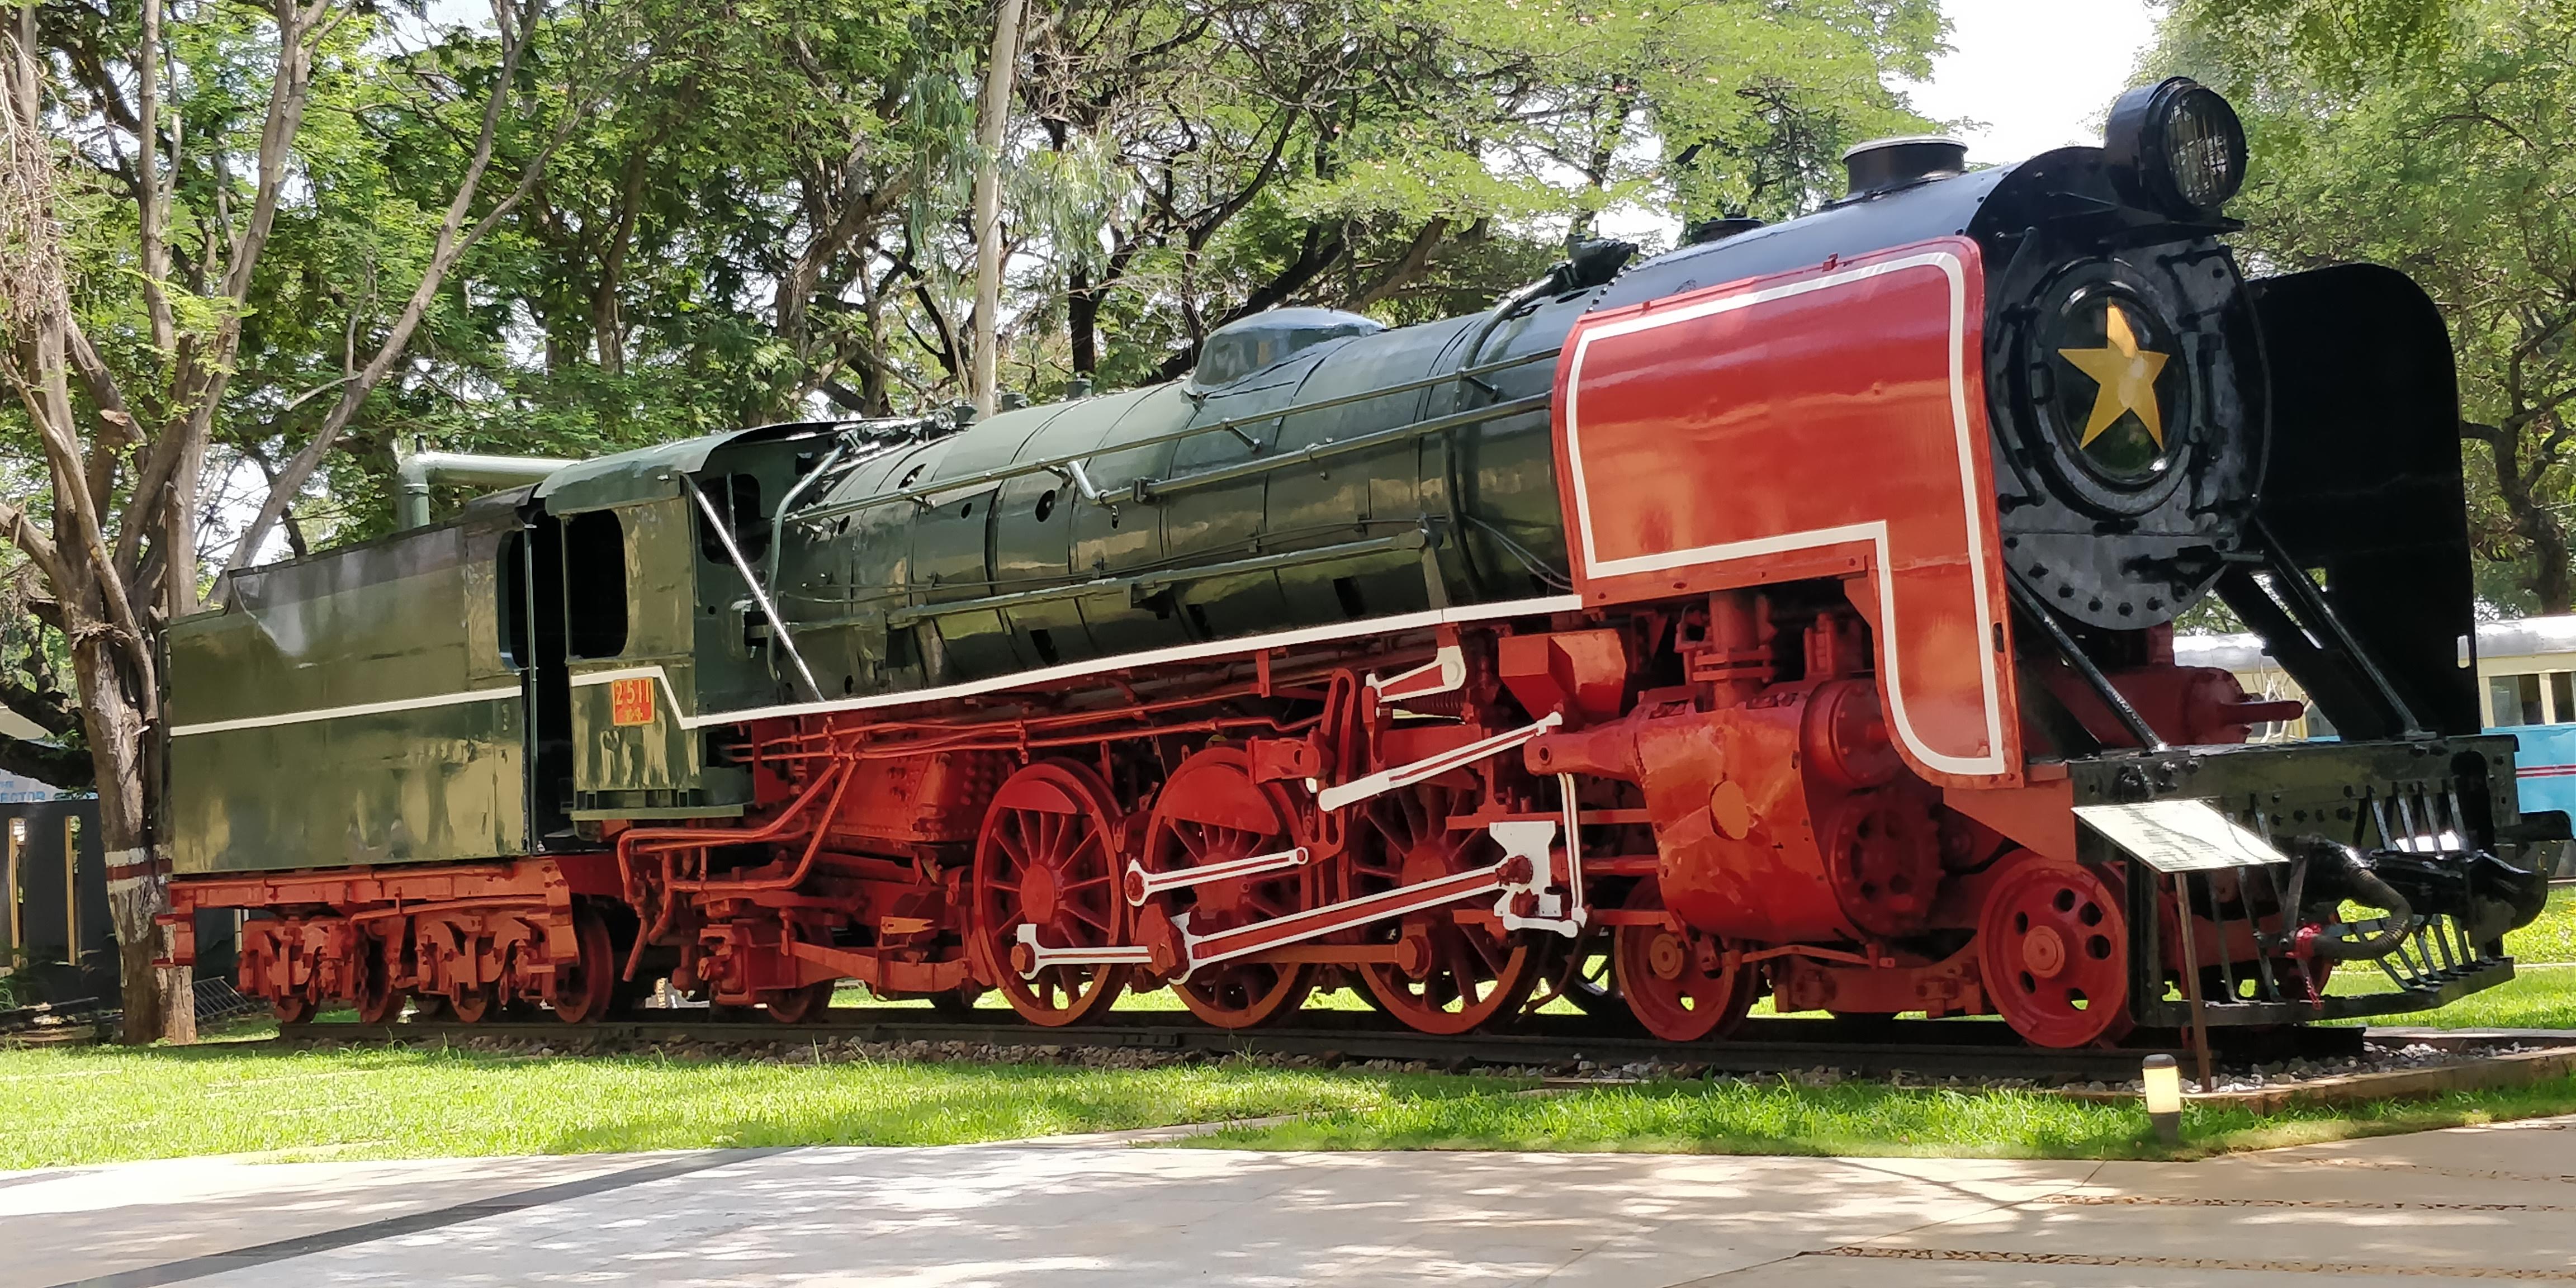 Railway Museum, Mysore - Wikipedia